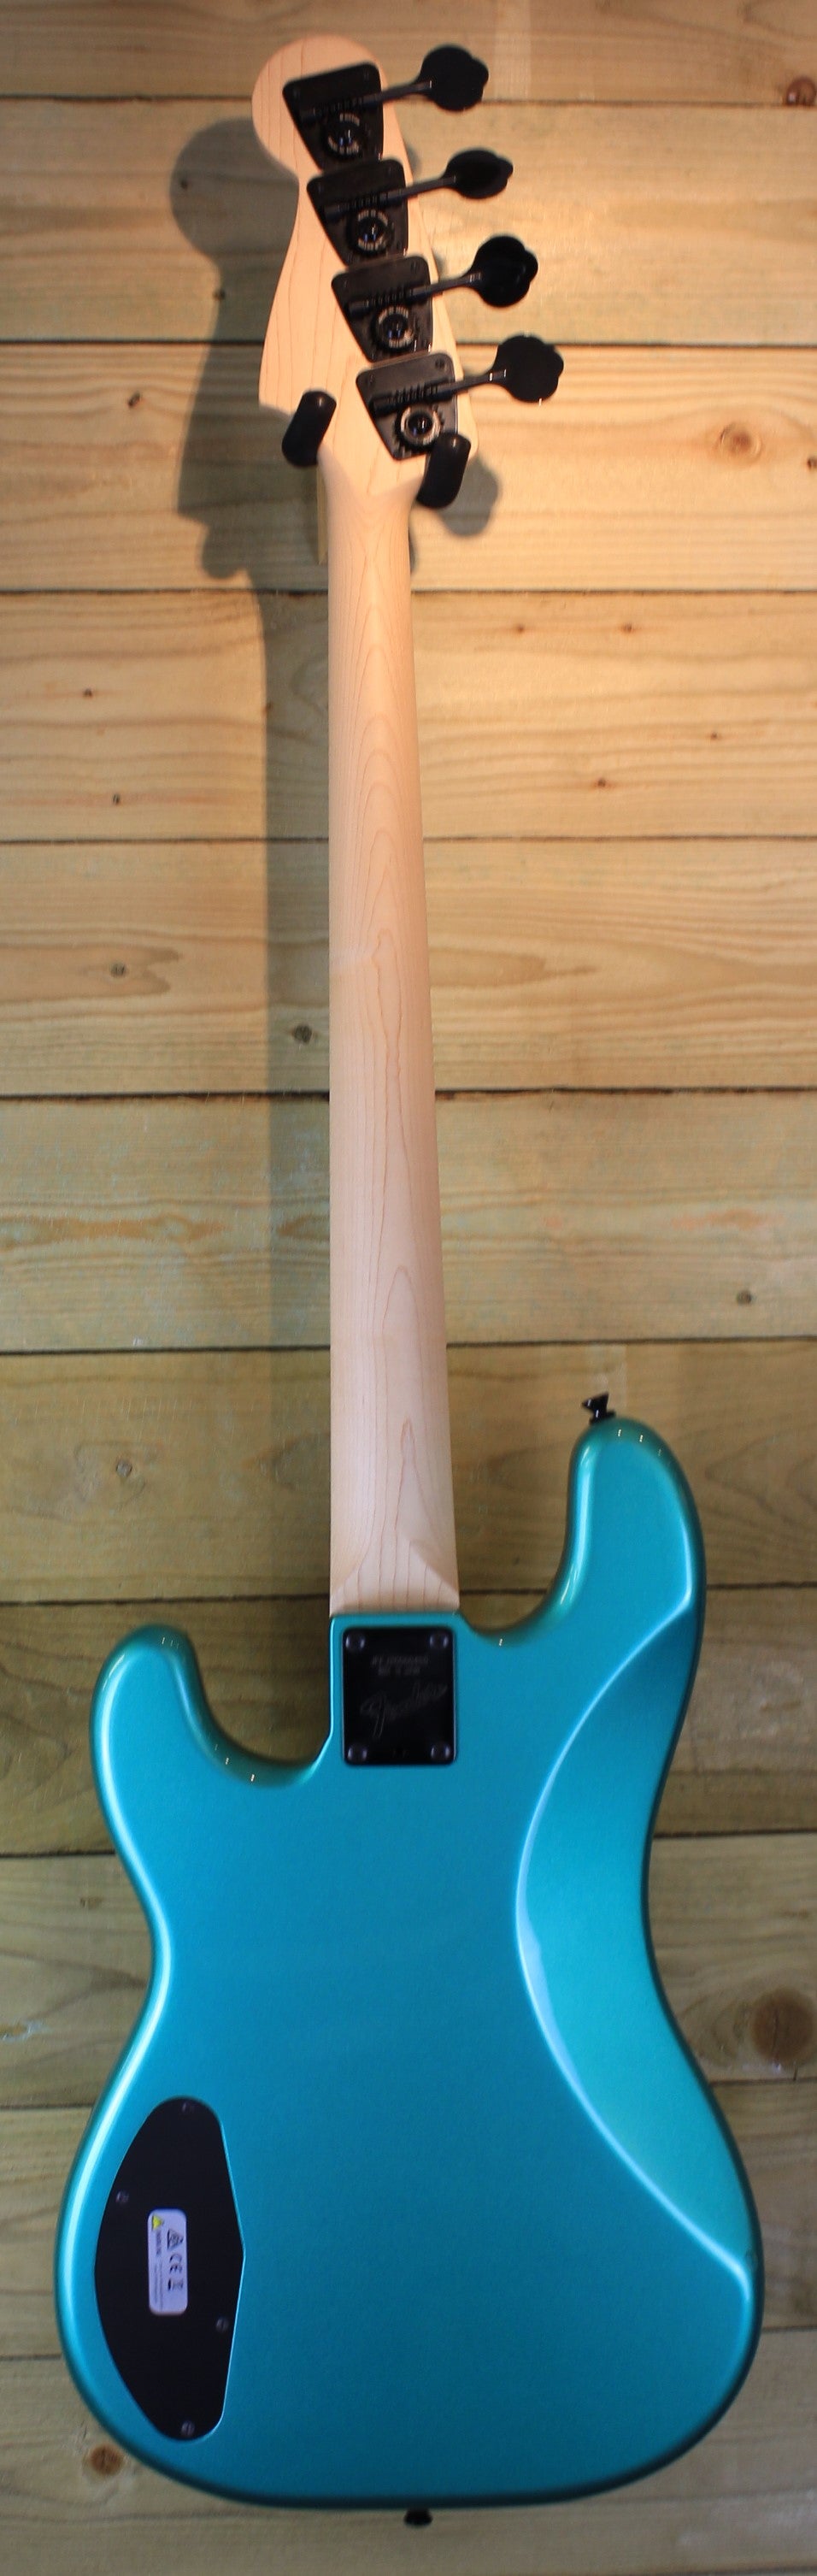 Fender Made in Japan Boxer Series - Sherwood Green Metallic